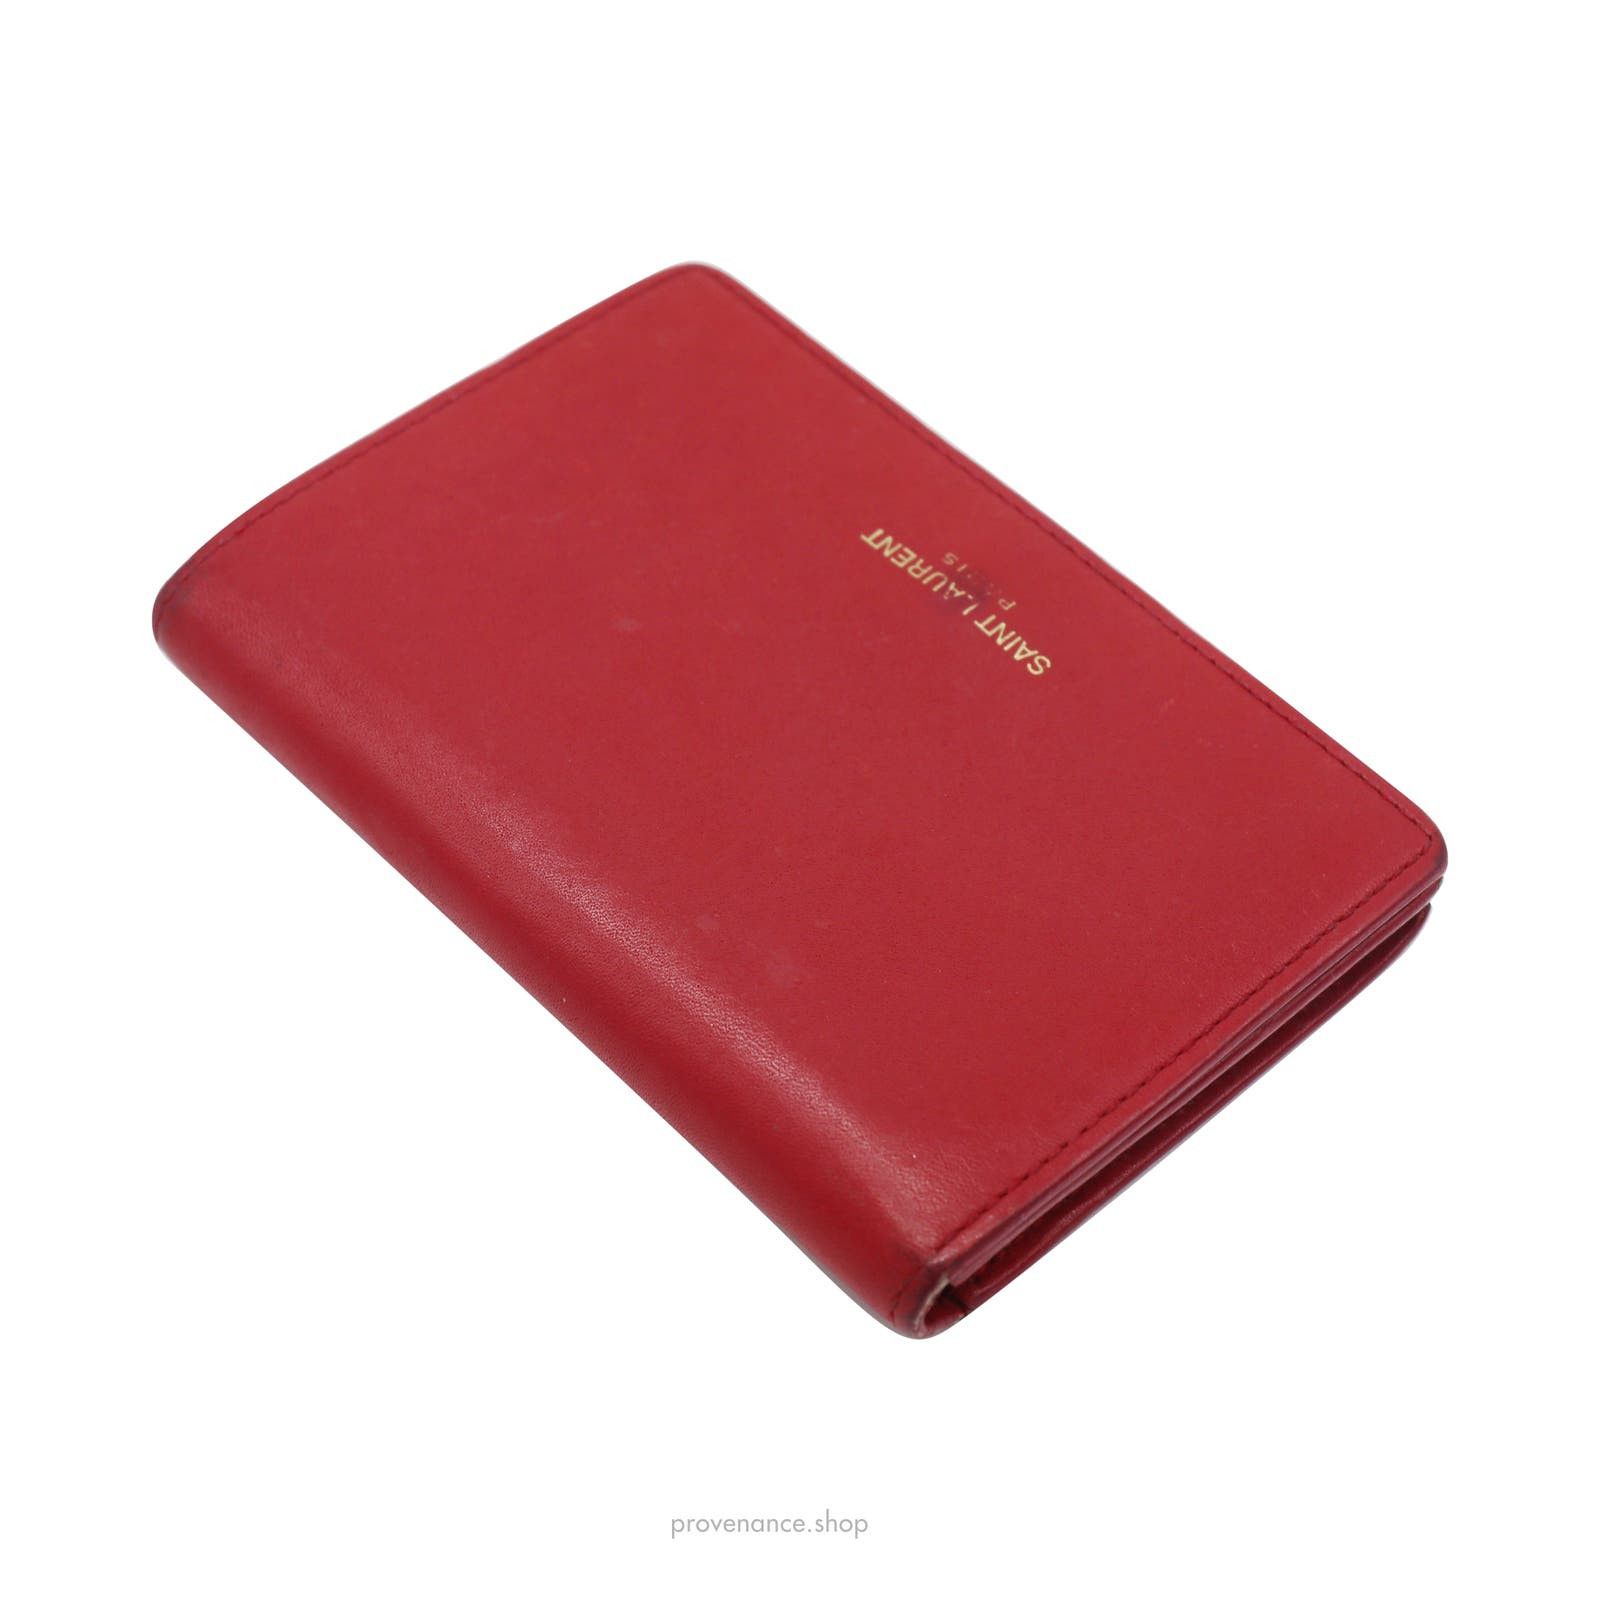 Saint Laurent Paris 🔴 Saint Laurent Paris SLP Card Holder - Poppy Red Leather Size ONE SIZE - 3 Thumbnail